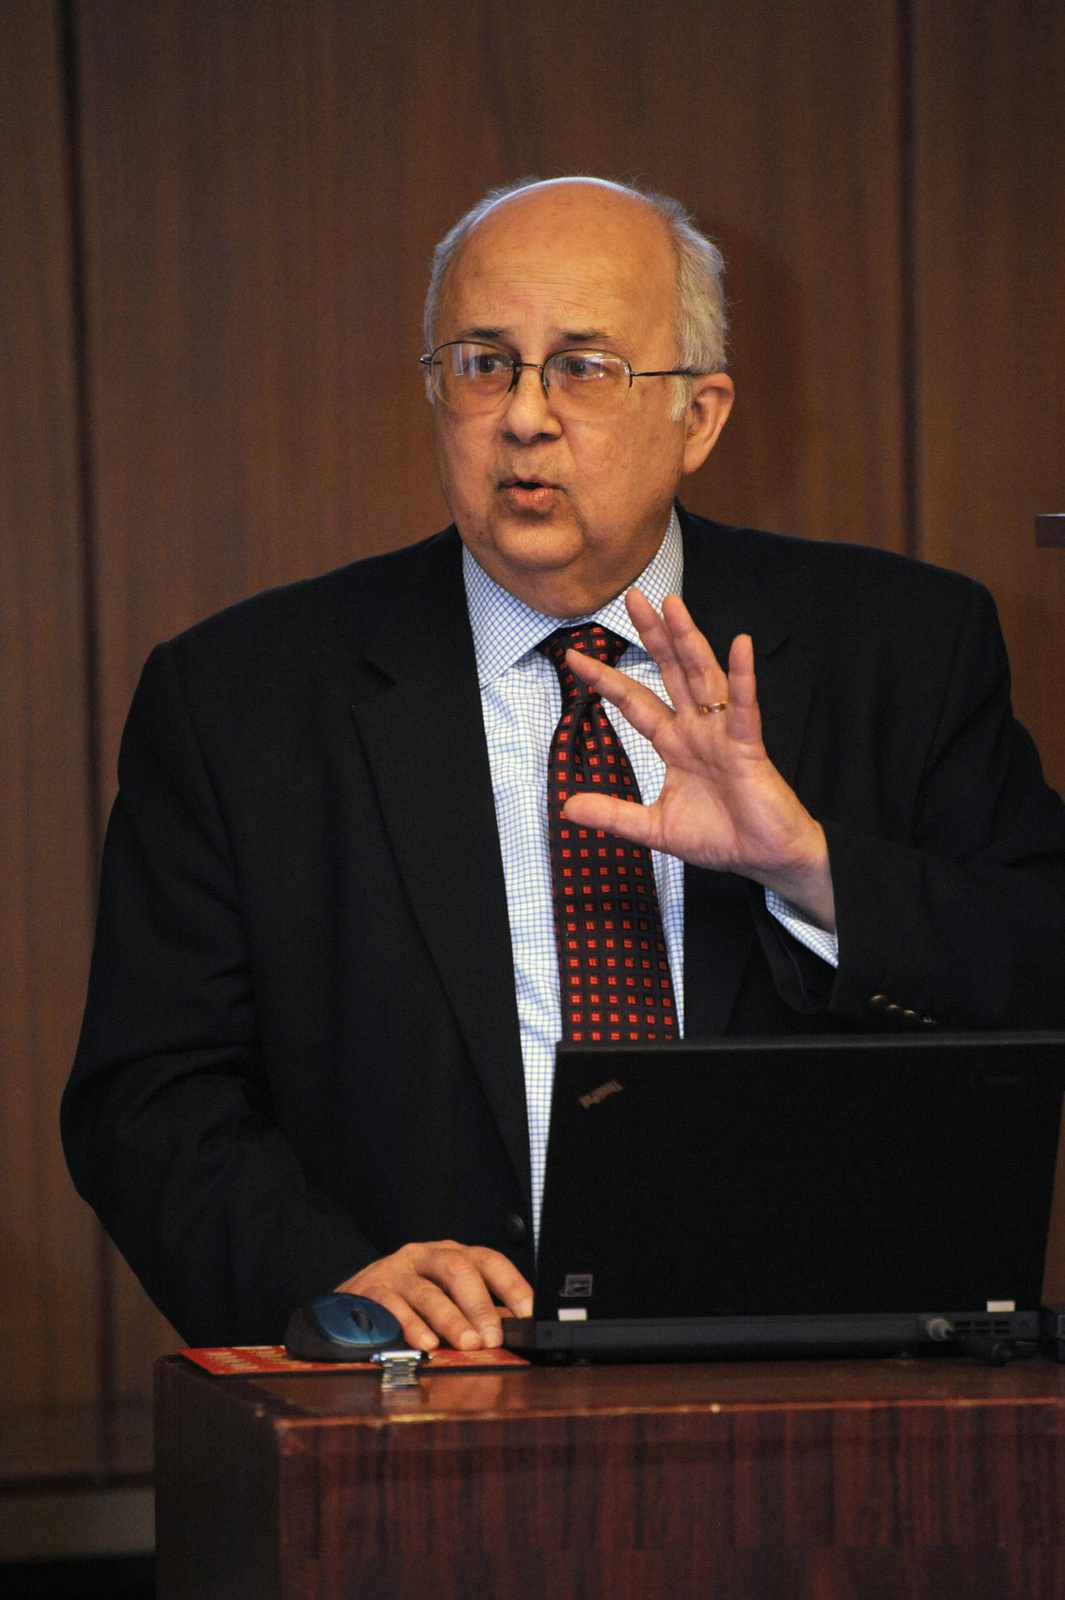 Dr. Ismail Serageldin